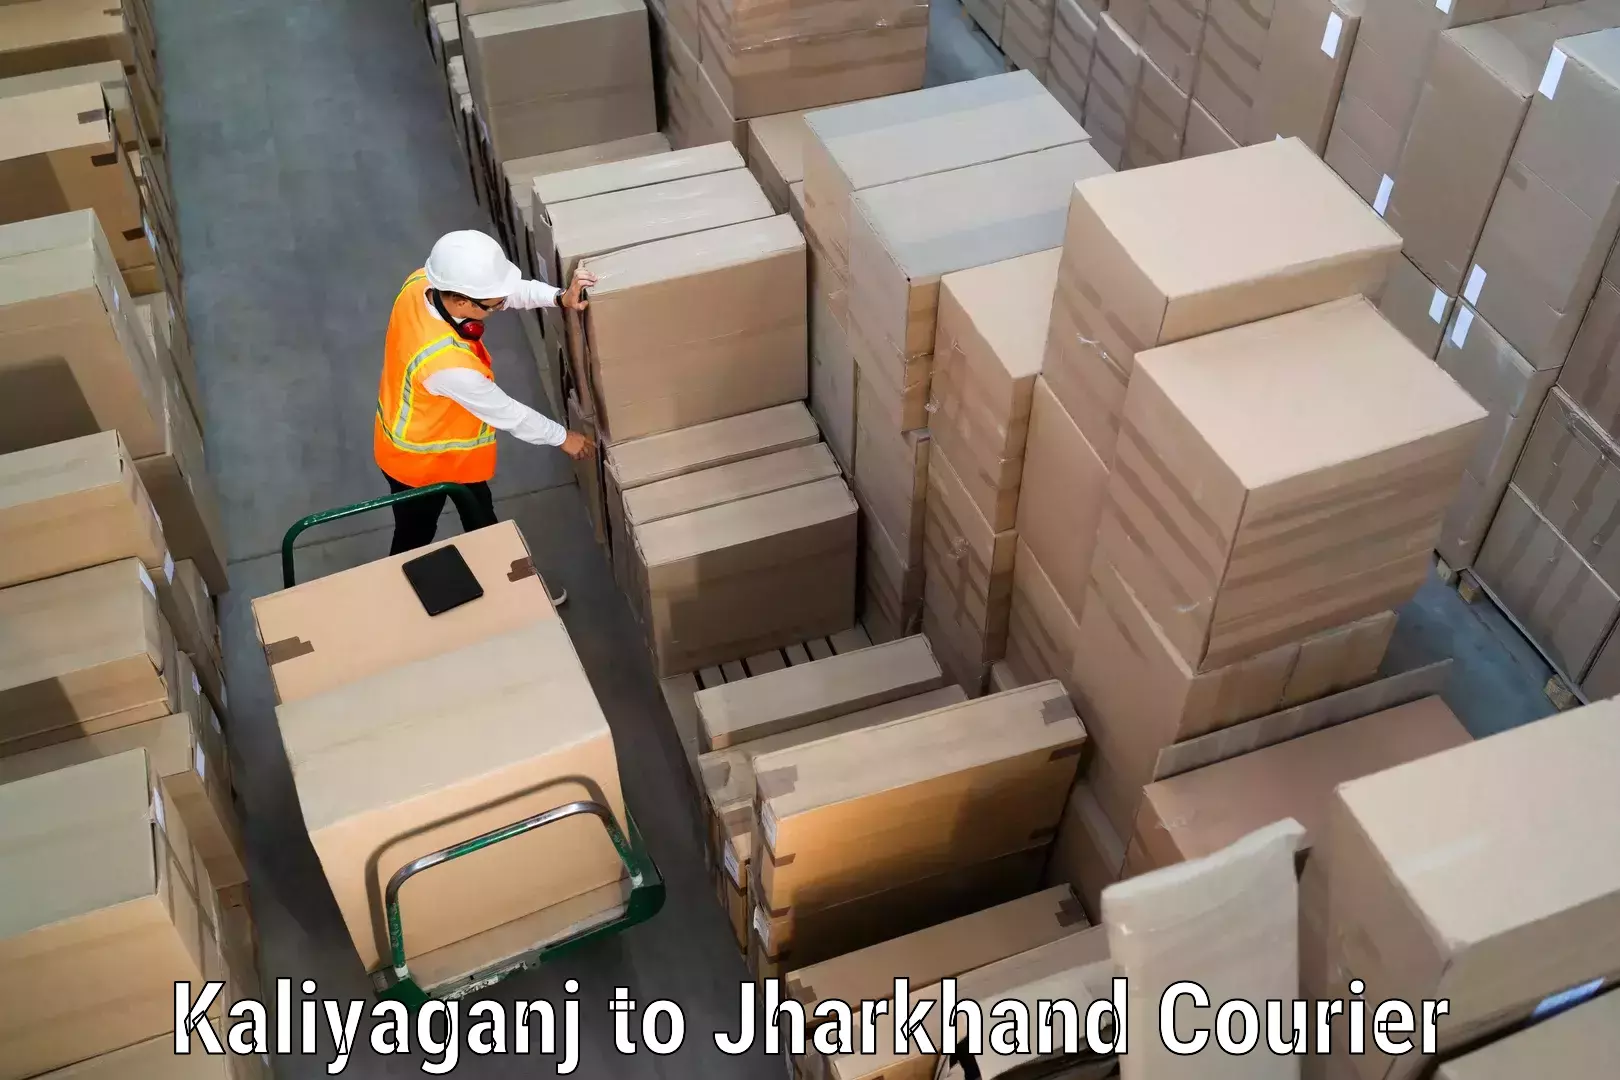 Digital courier platforms Kaliyaganj to Dhanbad